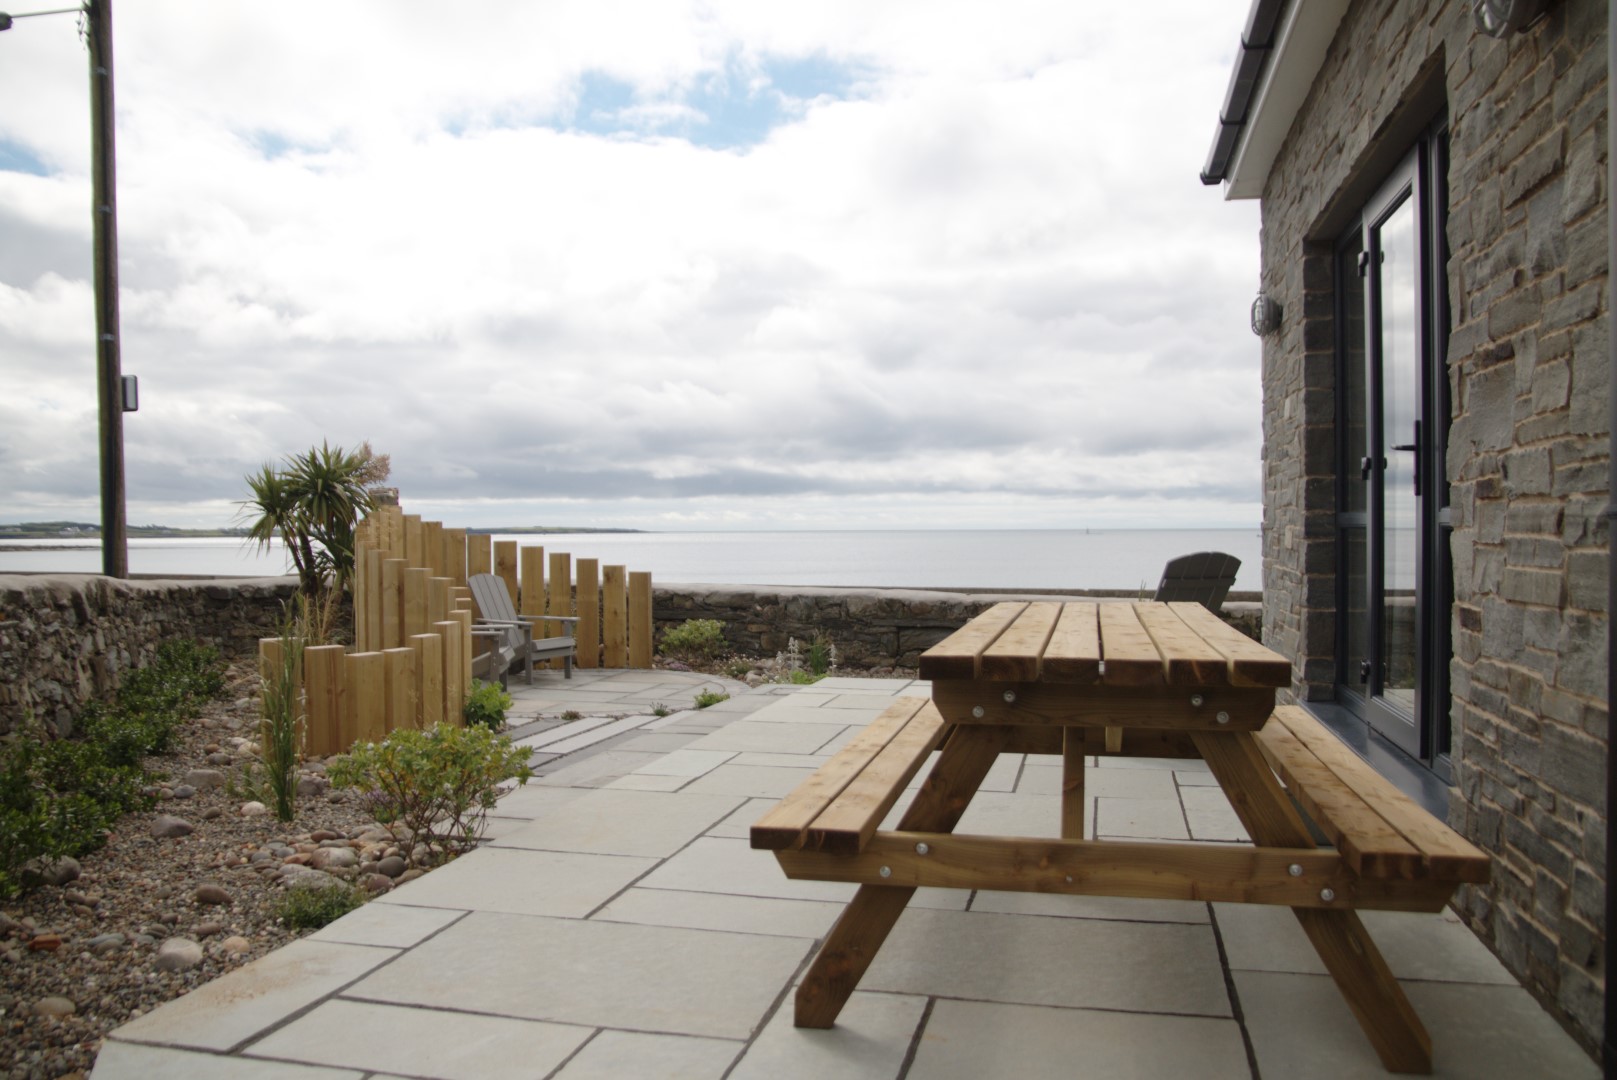 Coastal garden patio and bench